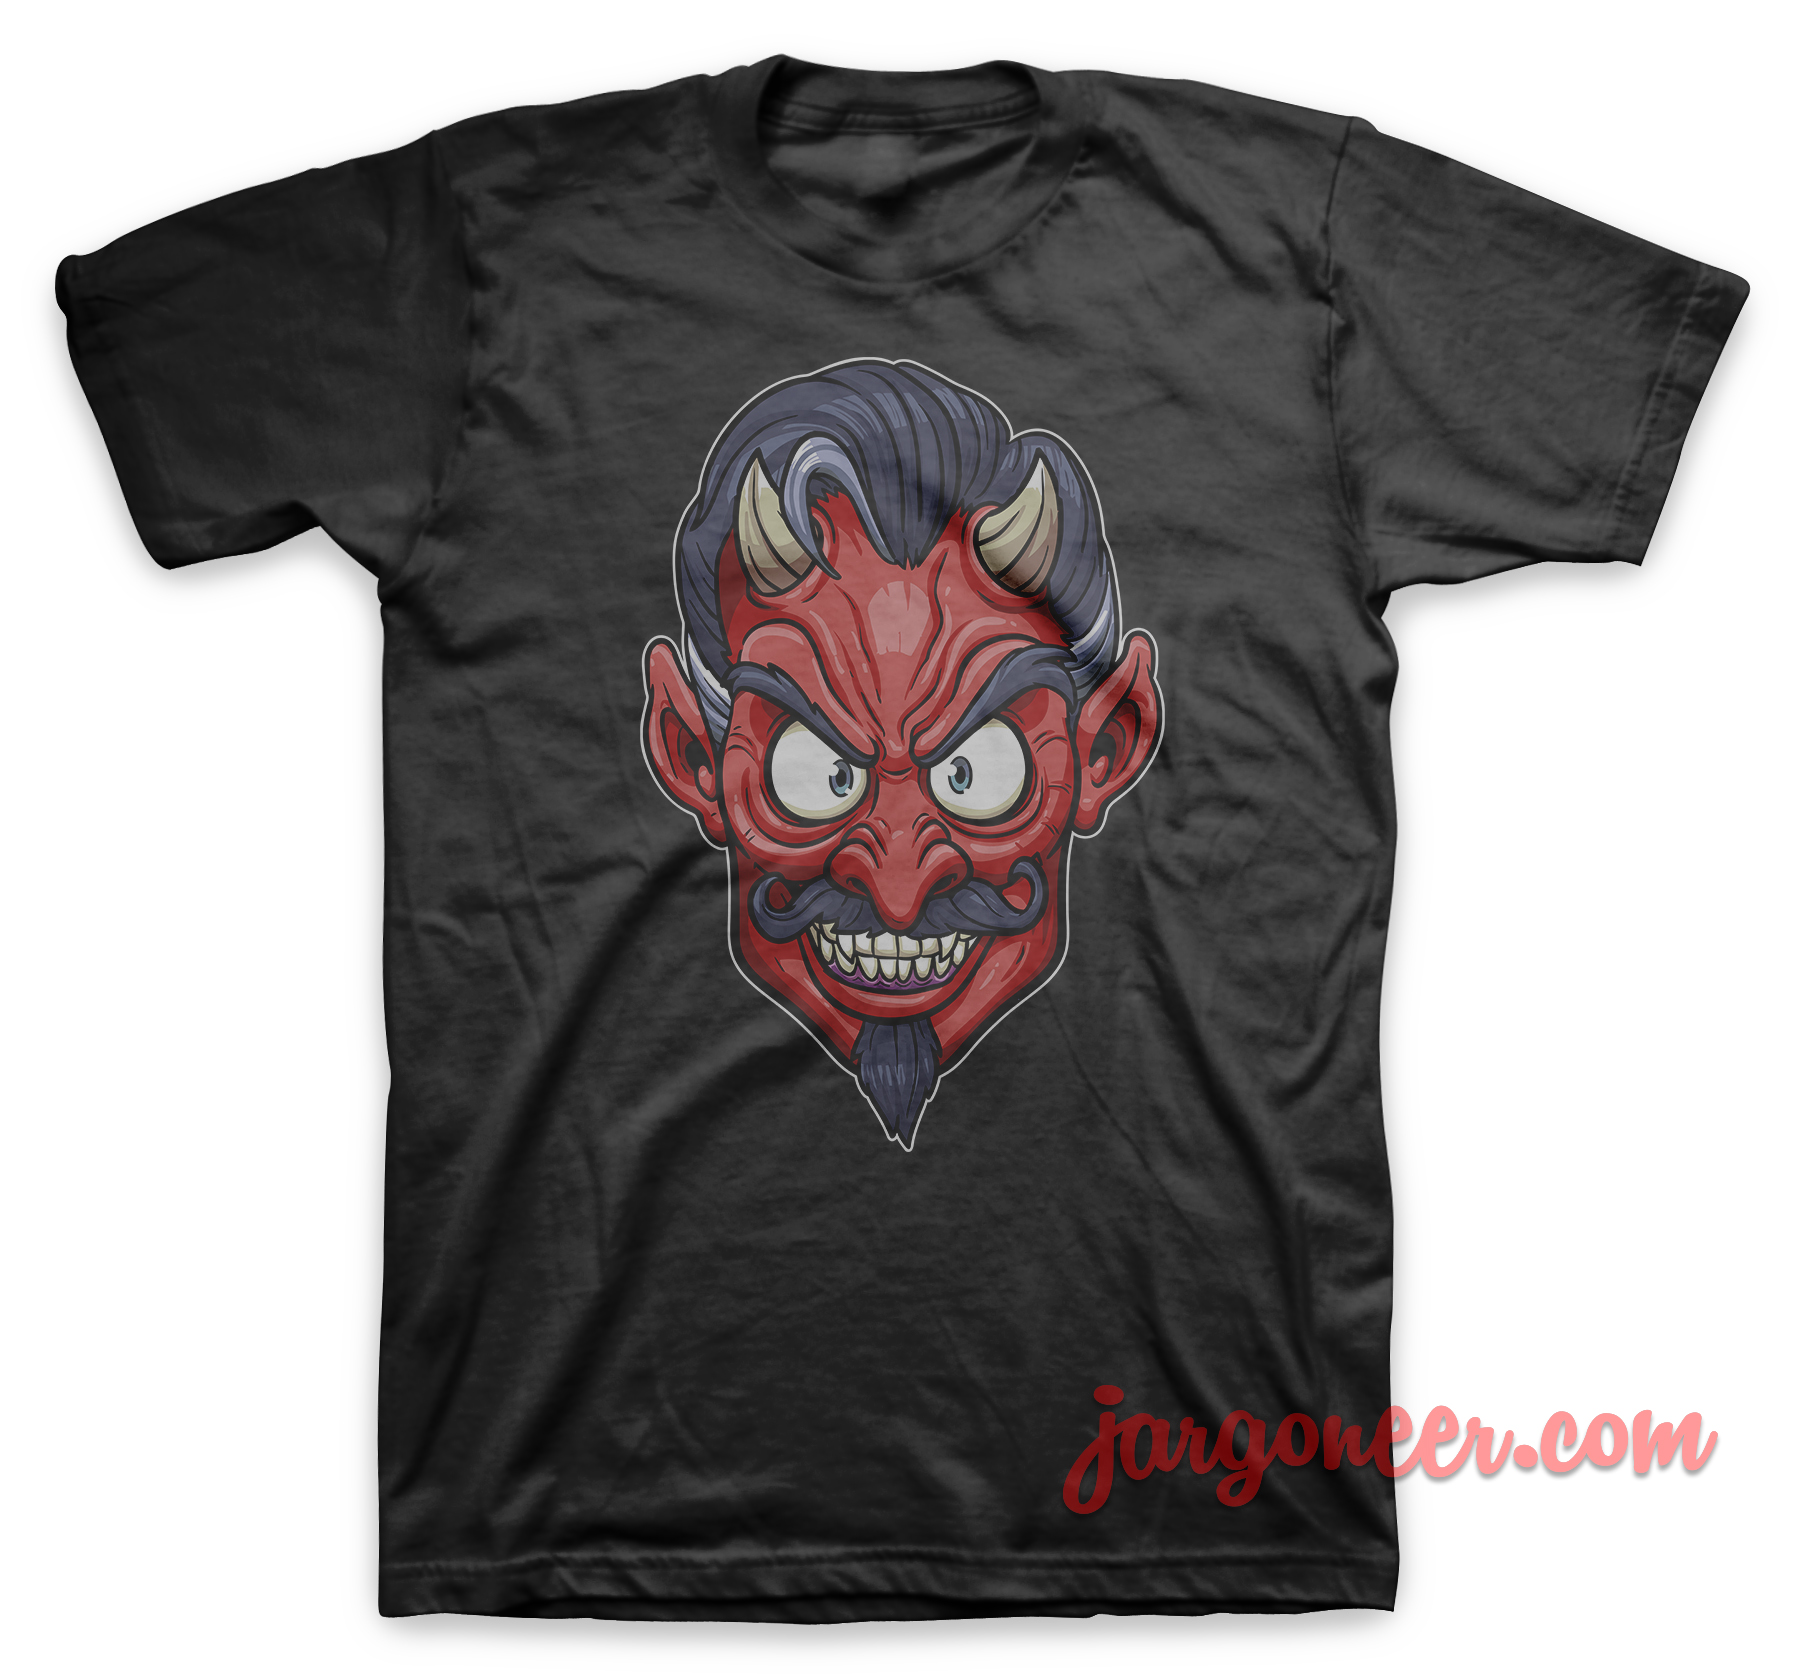 The Face Of Devil Black T Shirt - Shop Unique Graphic Cool Shirt Designs